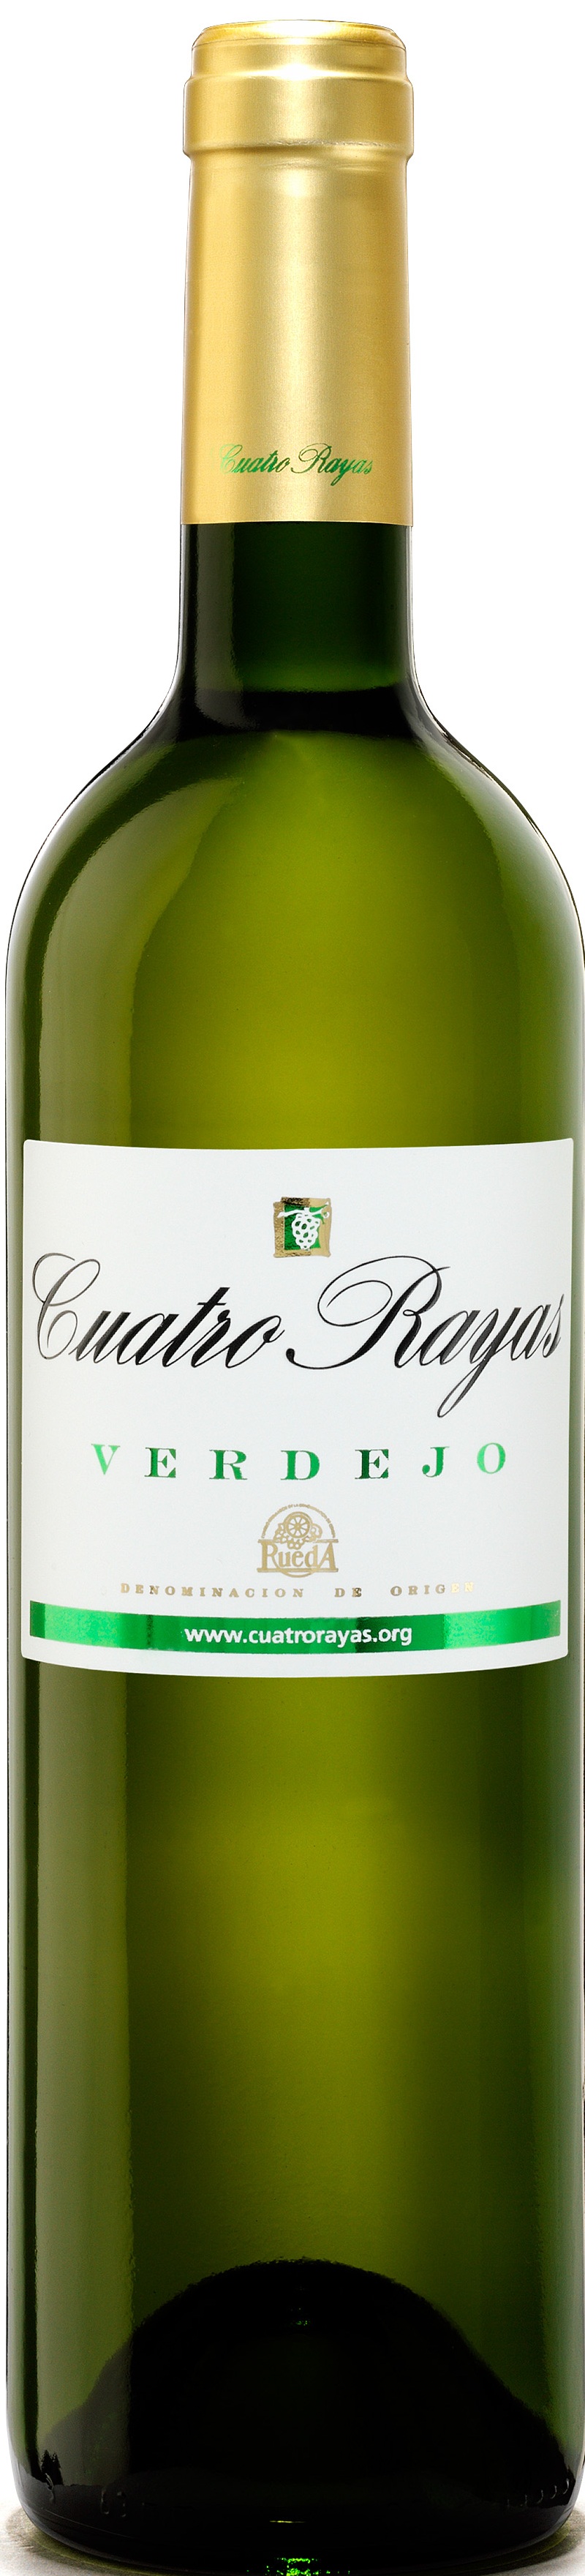 Logo del vino Cuatro Rayas Verdejo